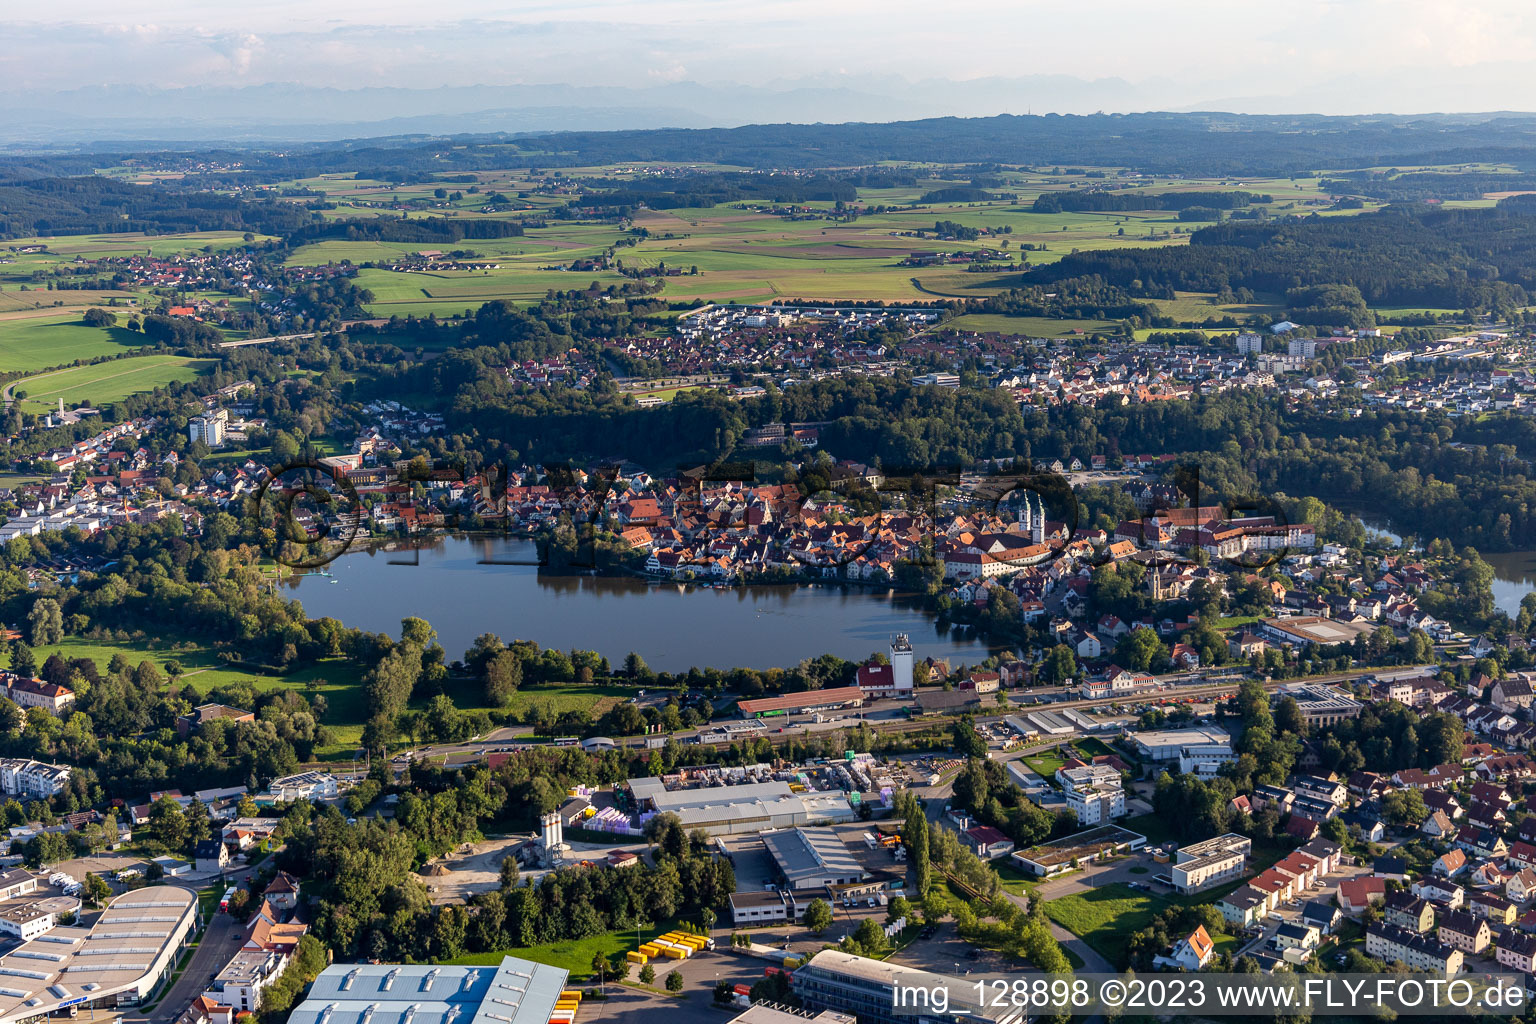 Vue aérienne de Vue sur la ville du centre-ville, sur les rives du lac de la ville à Bad Waldsee dans le département Bade-Wurtemberg, Allemagne